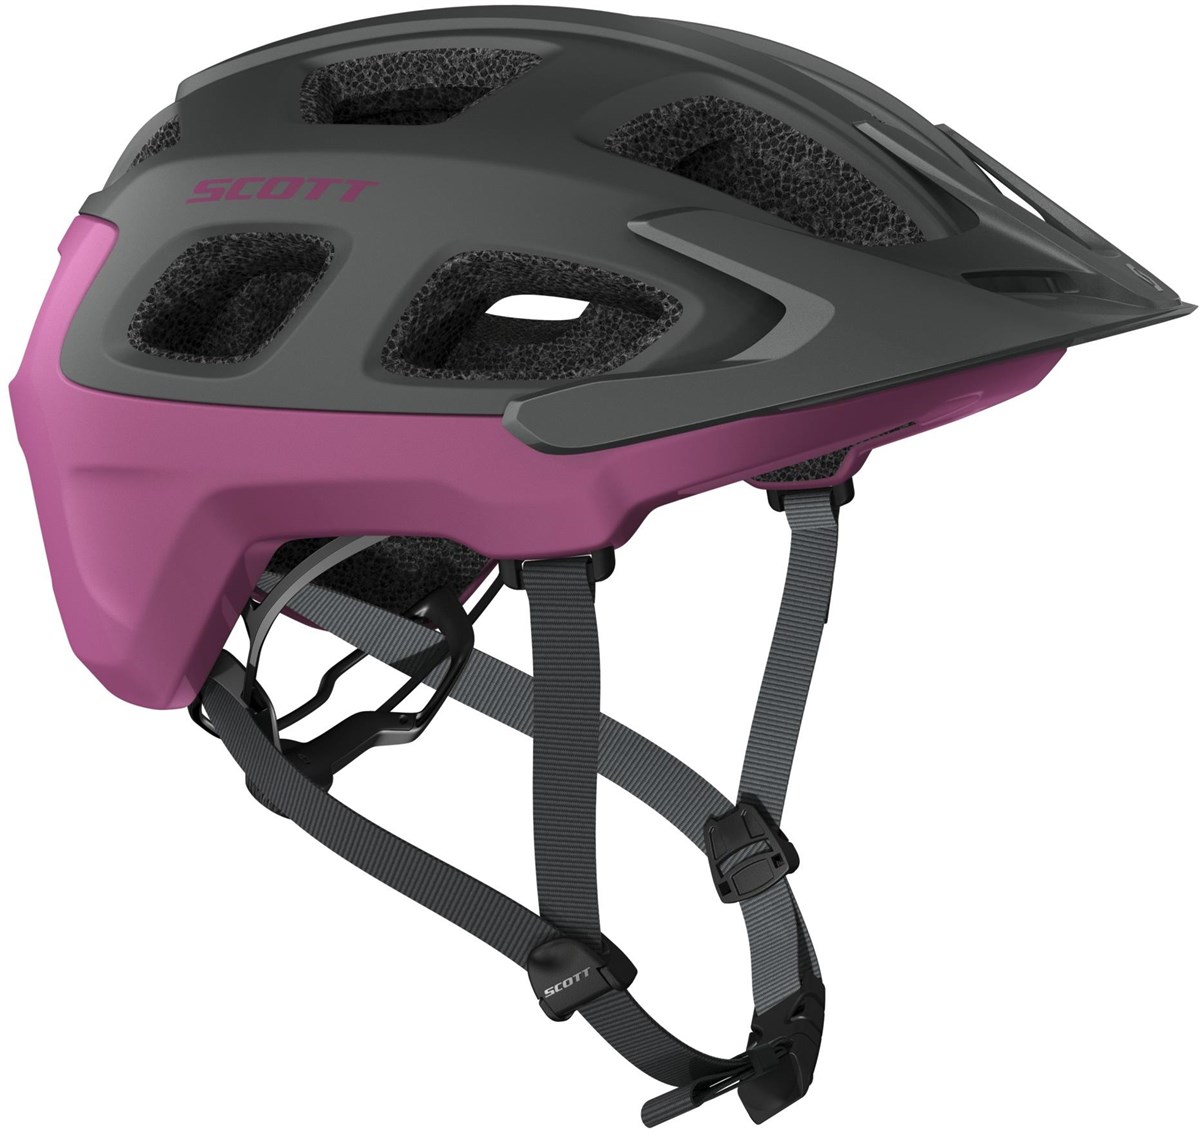 Scott Vivo MTB Cycling Helmet